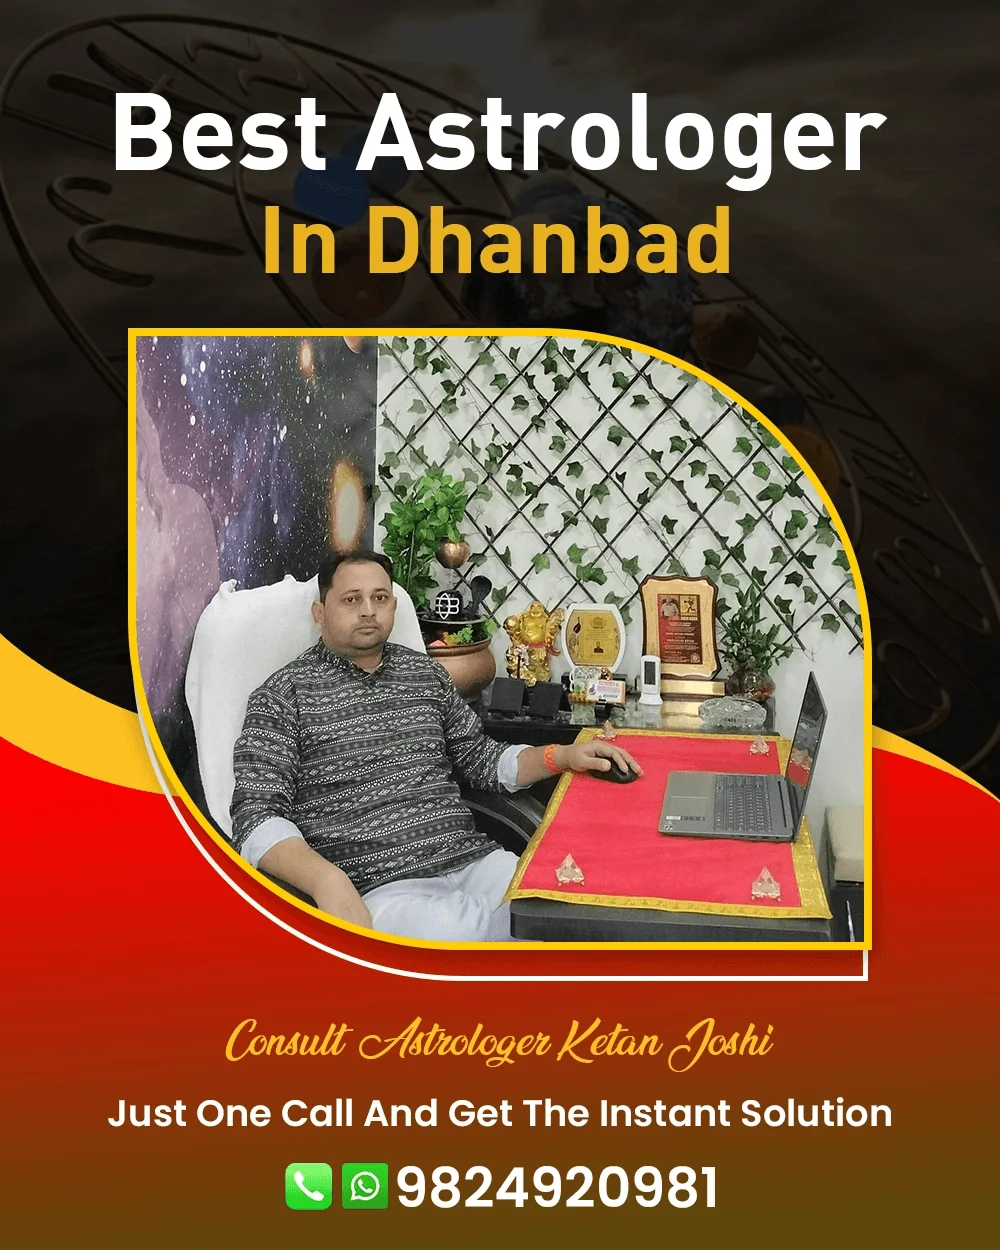 Best Astrologer In Dhanbad